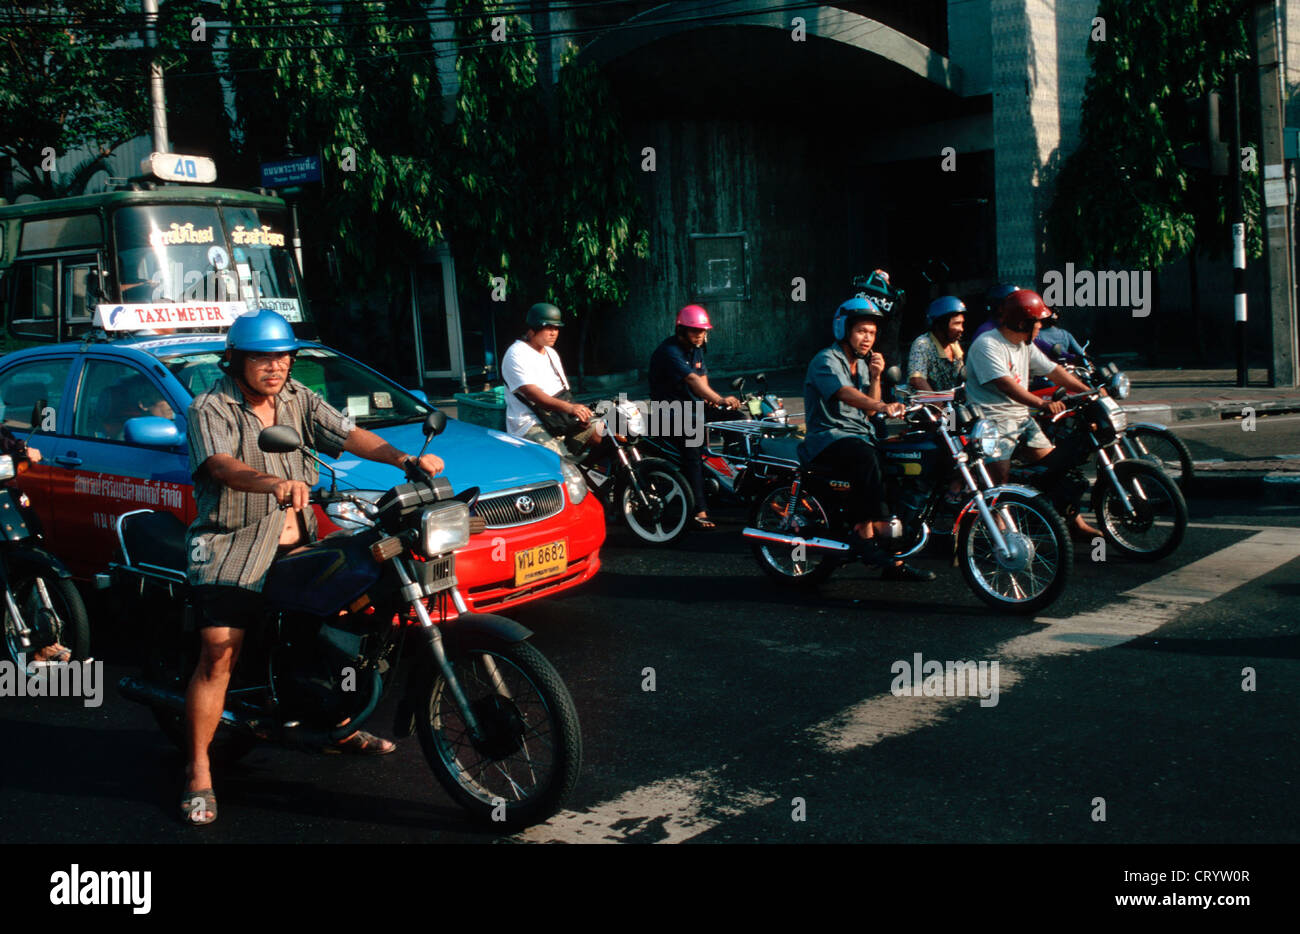 Les voitures et les motos l'attente aux feux de circulation Banque D'Images